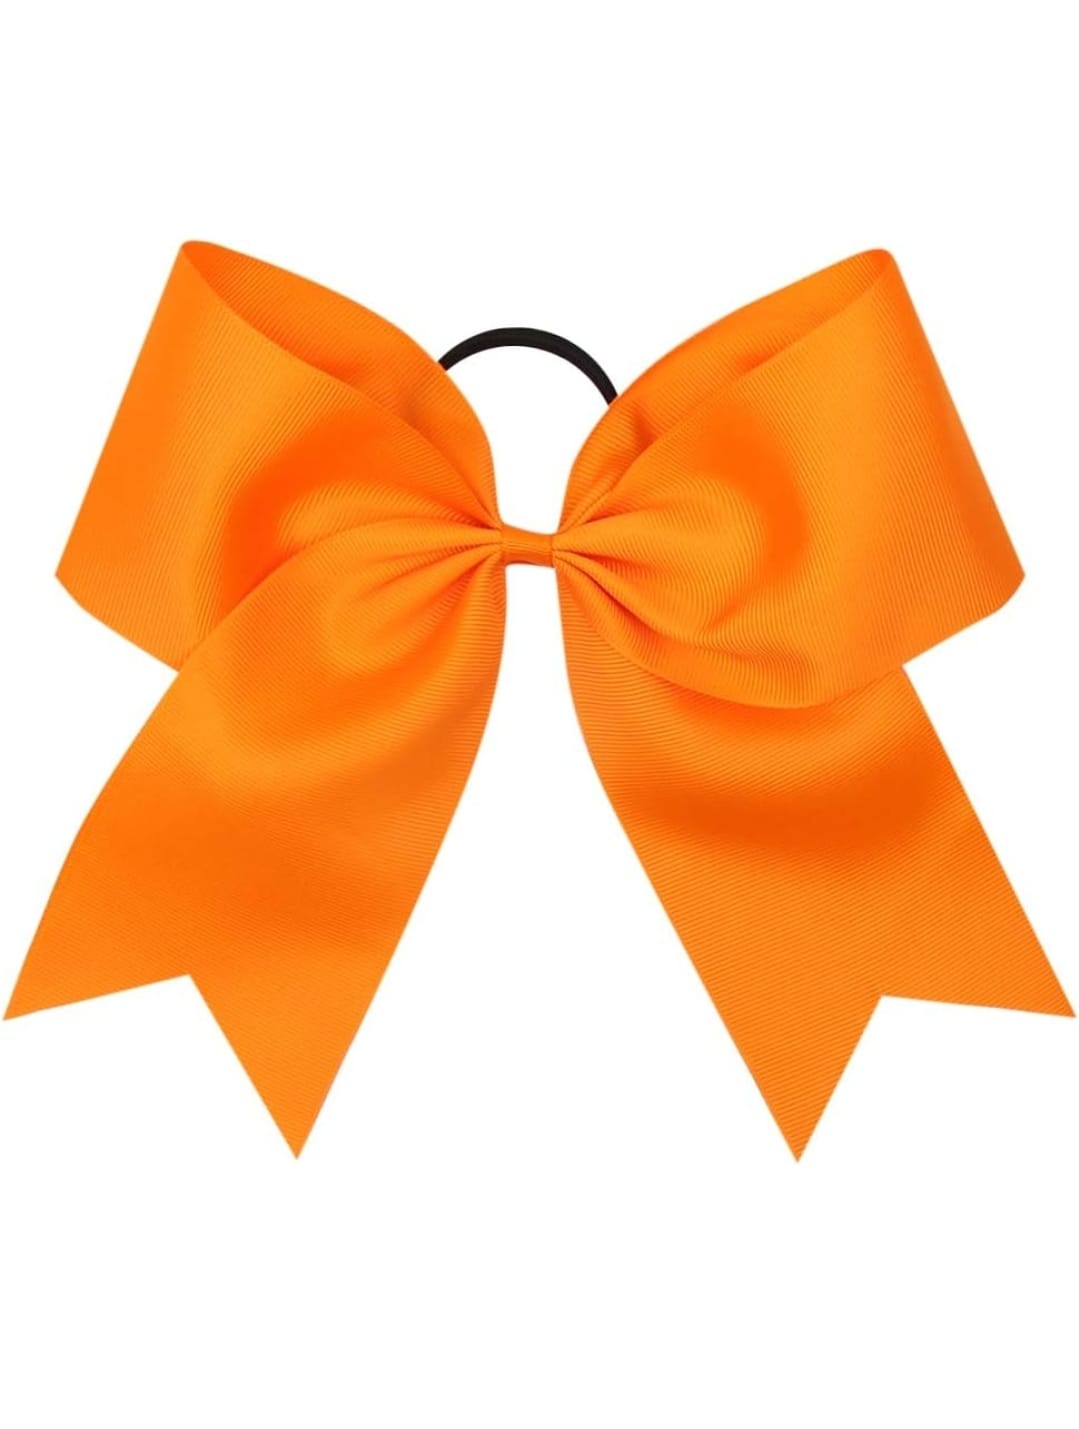 Orange Cheer Bow